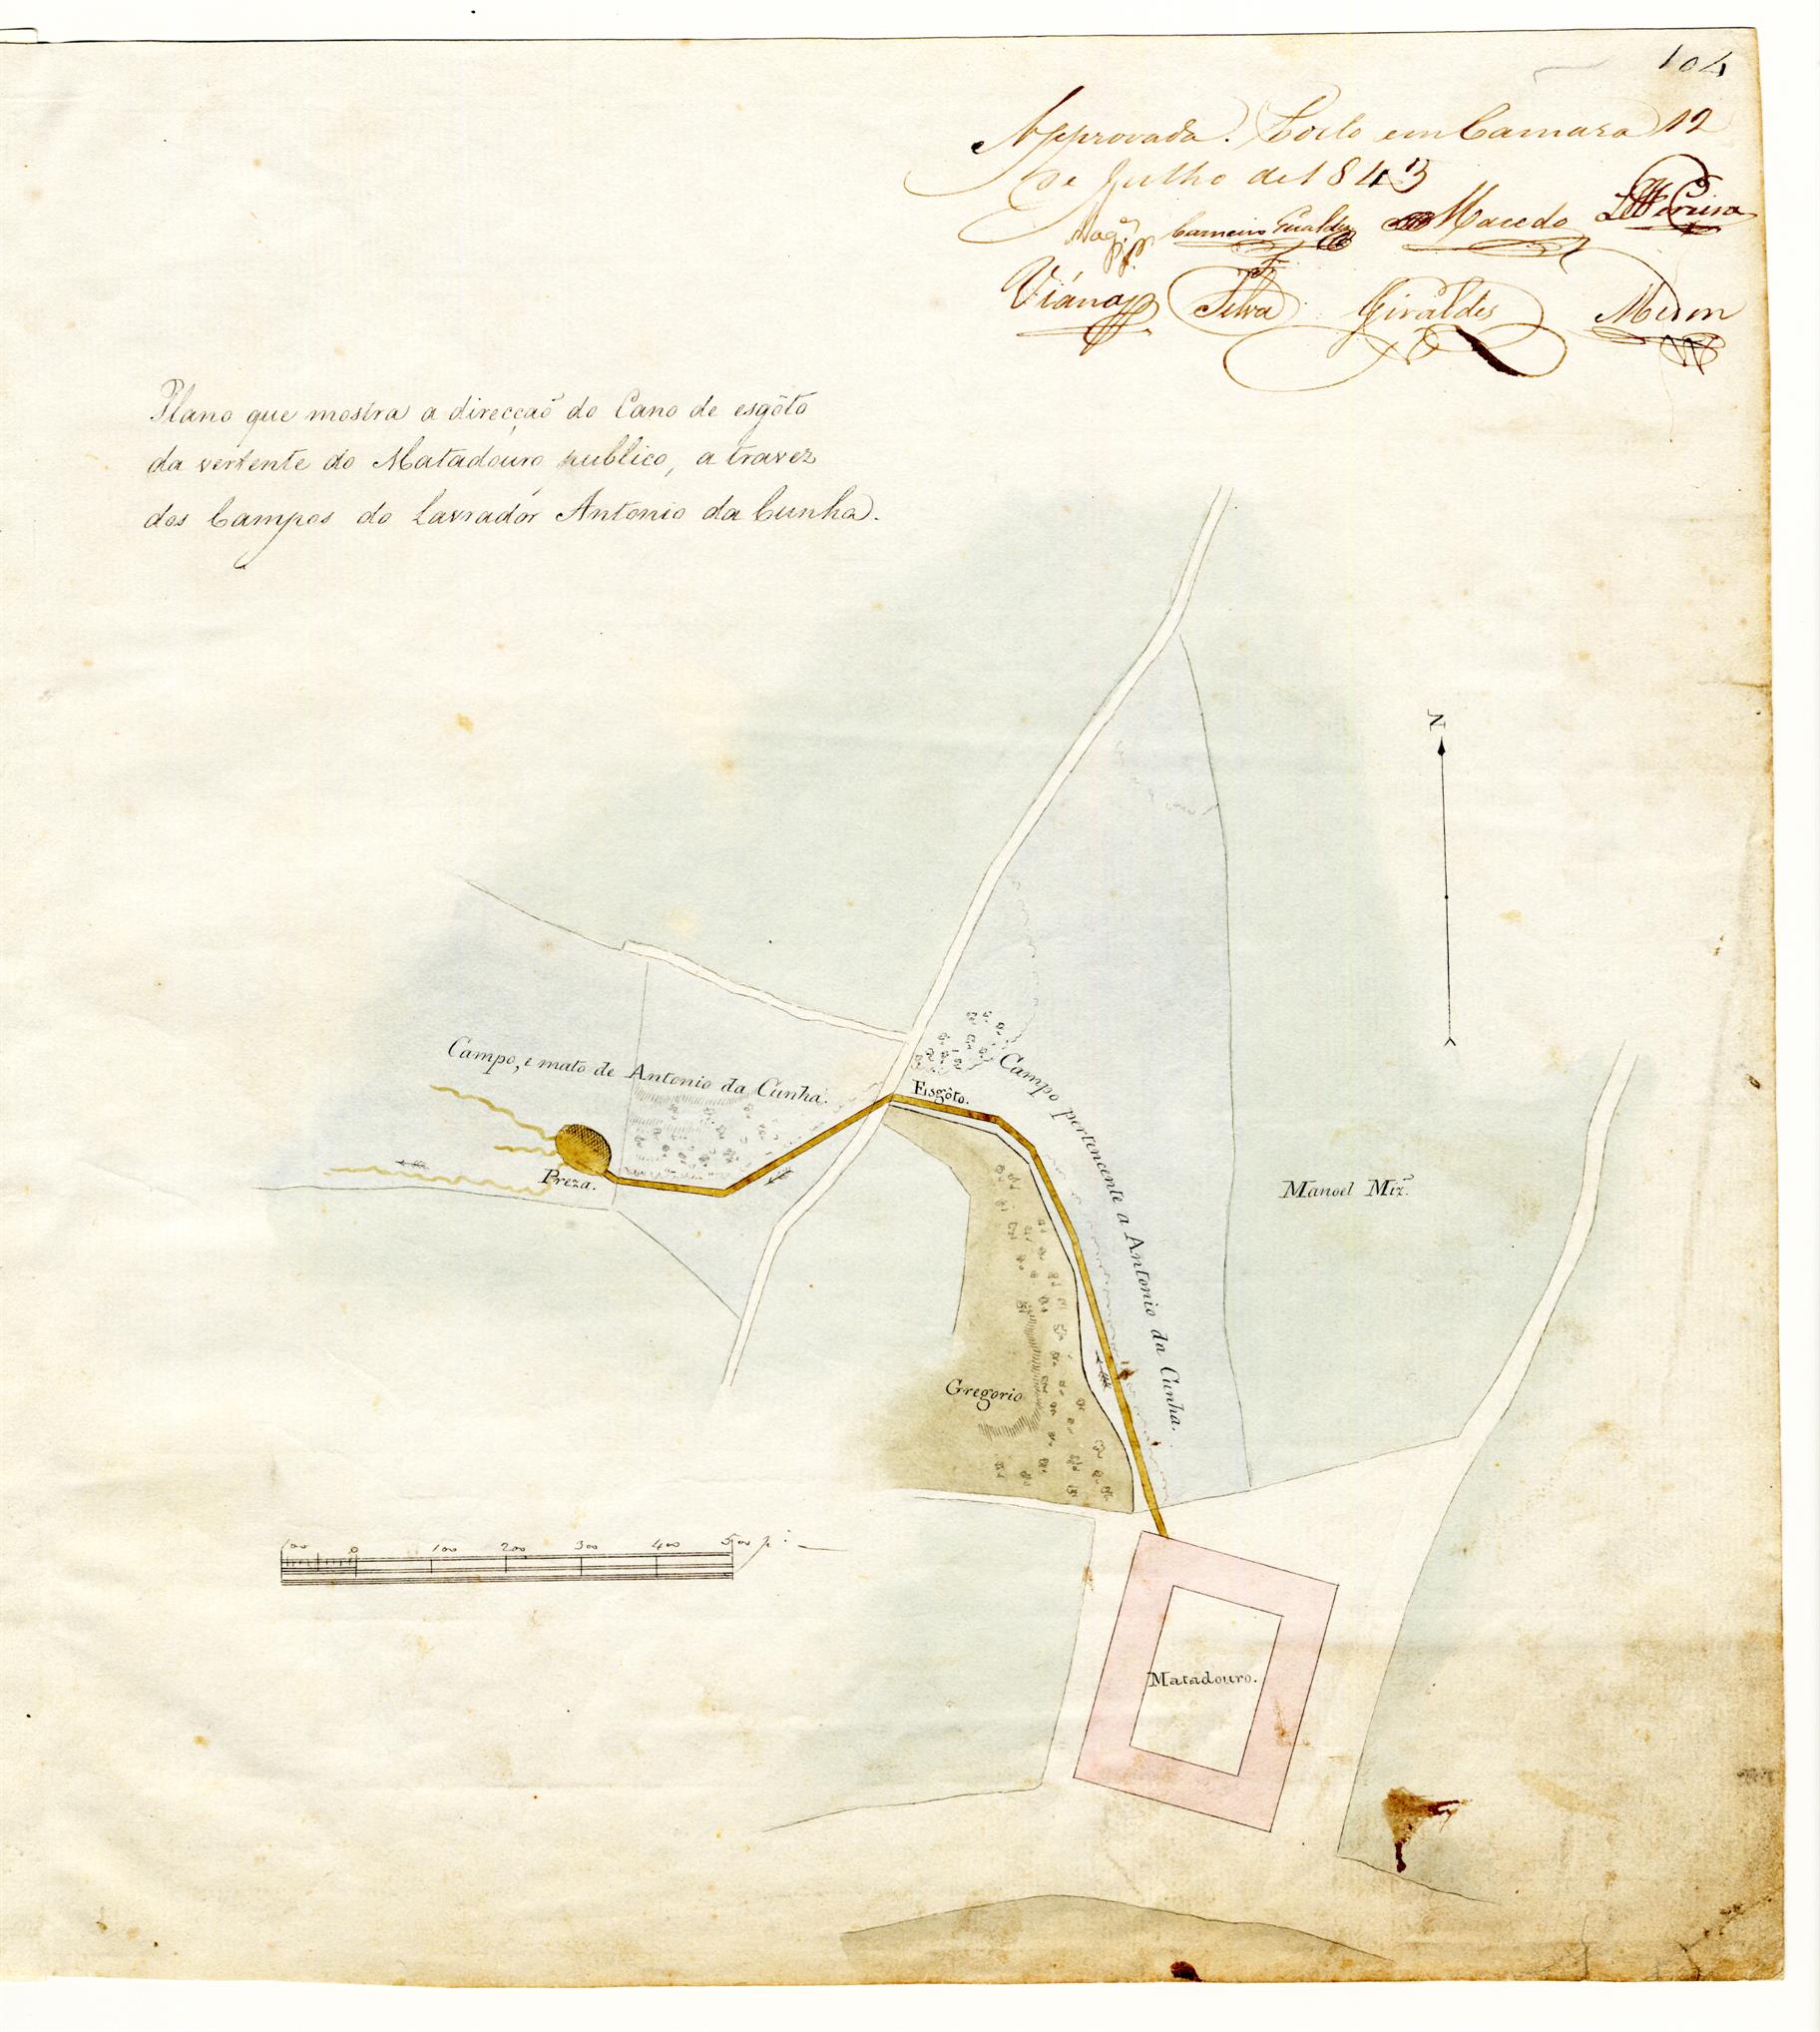 Plano que mostra a direção do cano de esgoto da vertente do Matadouro Público através dos campos do lavrador António da Cunha